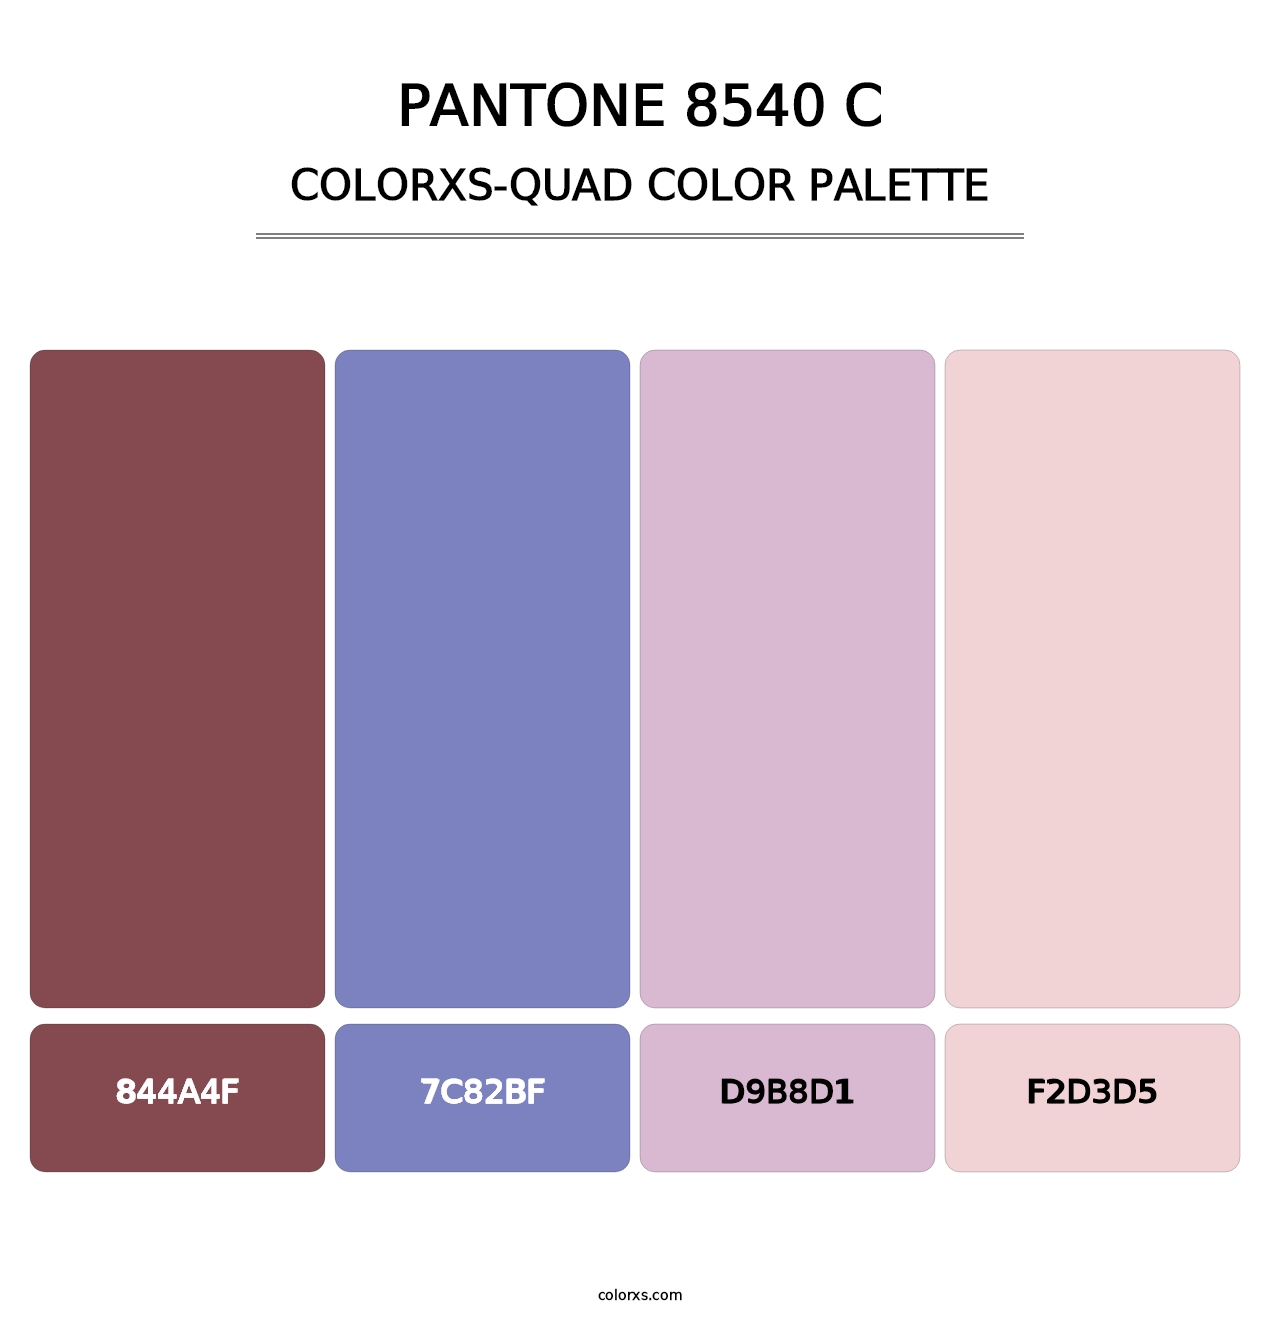 PANTONE 8540 C - Colorxs Quad Palette